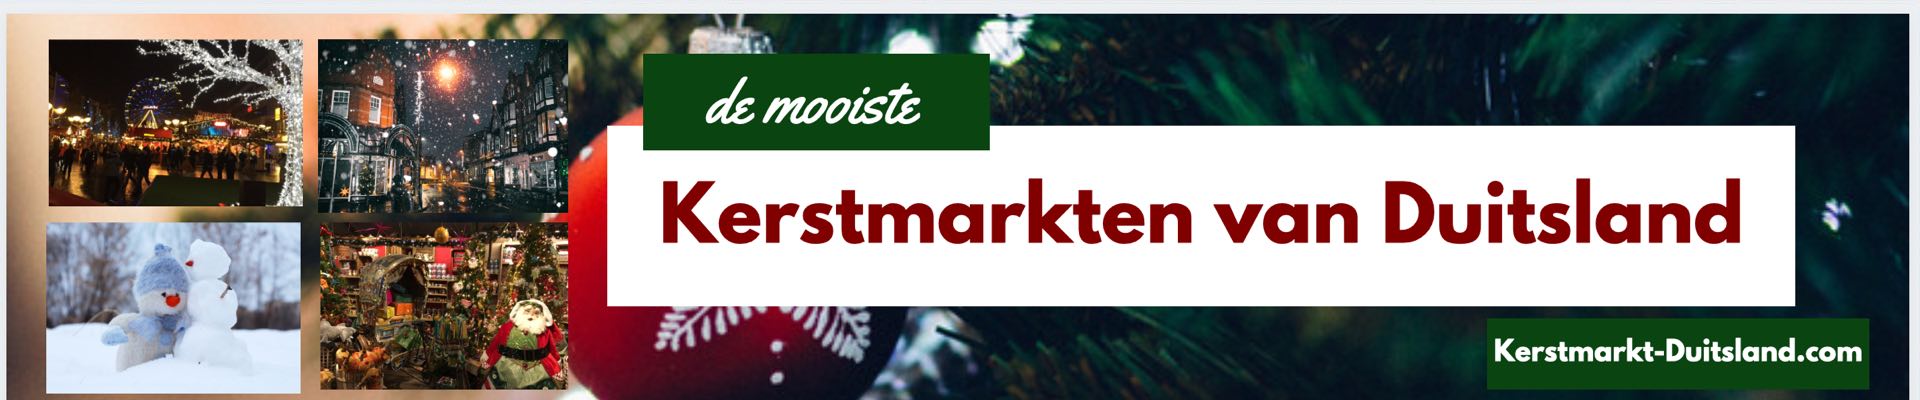 Kerstmarkt Duitsland